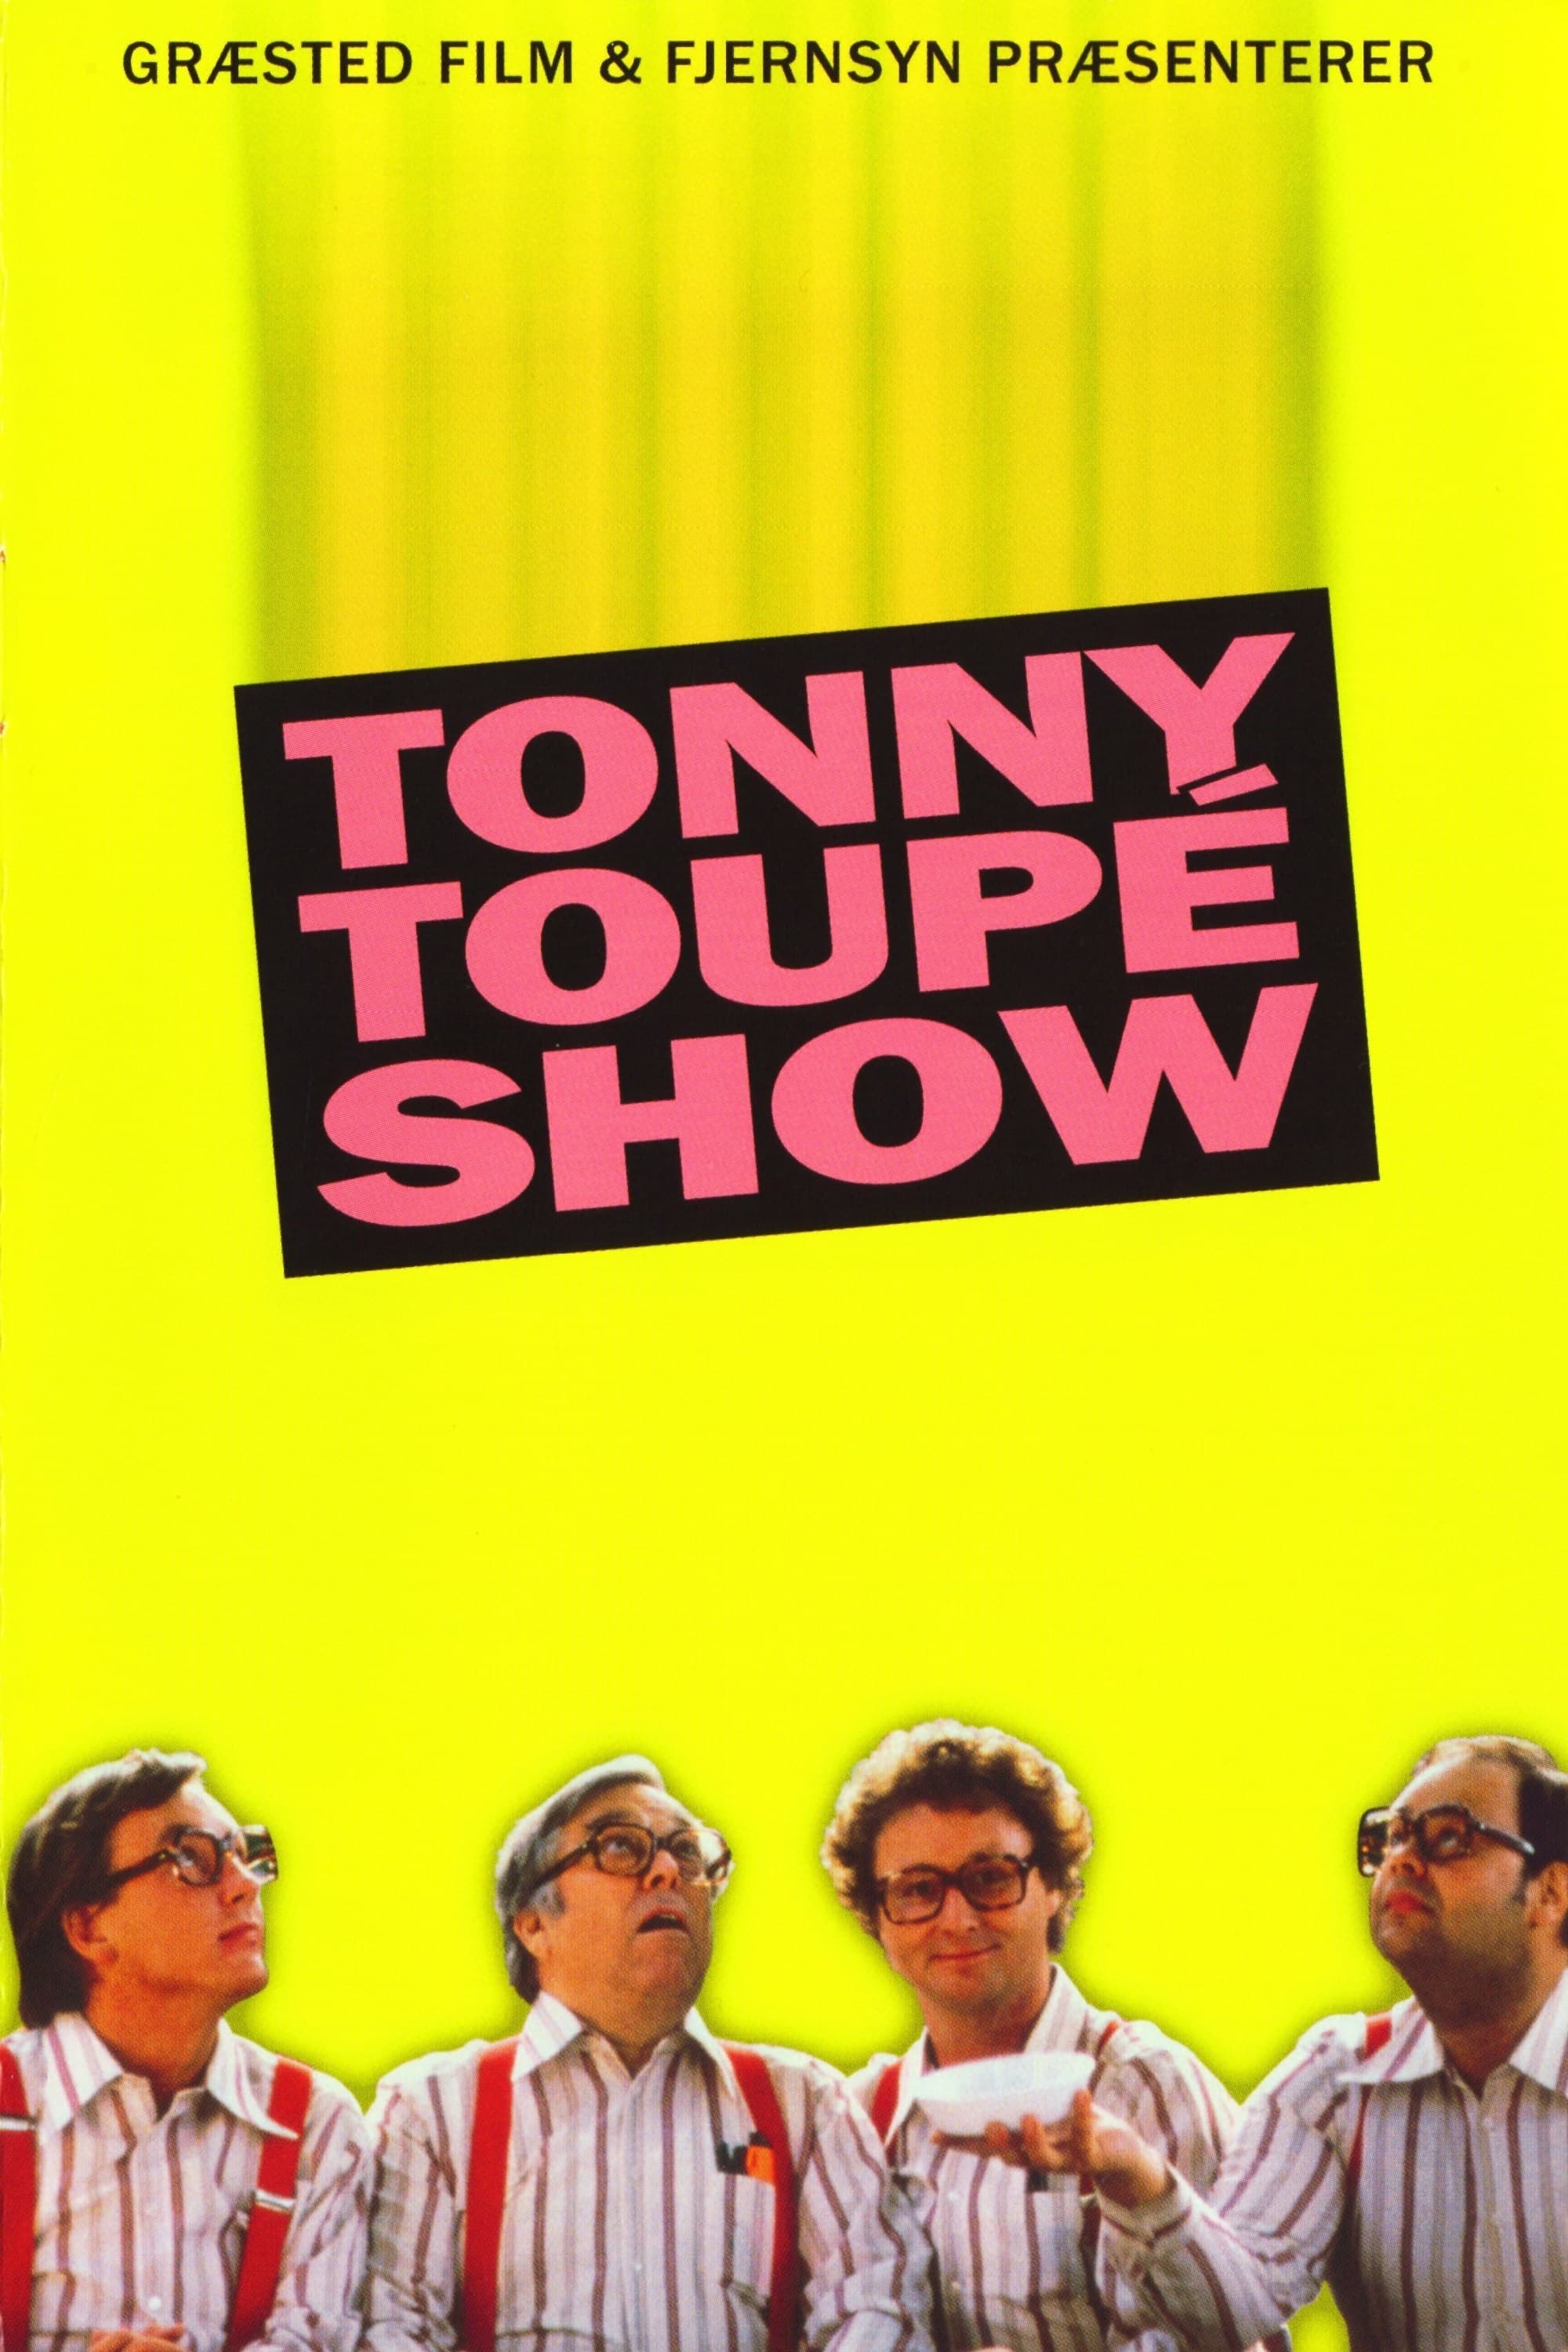 Tonny Toupé show